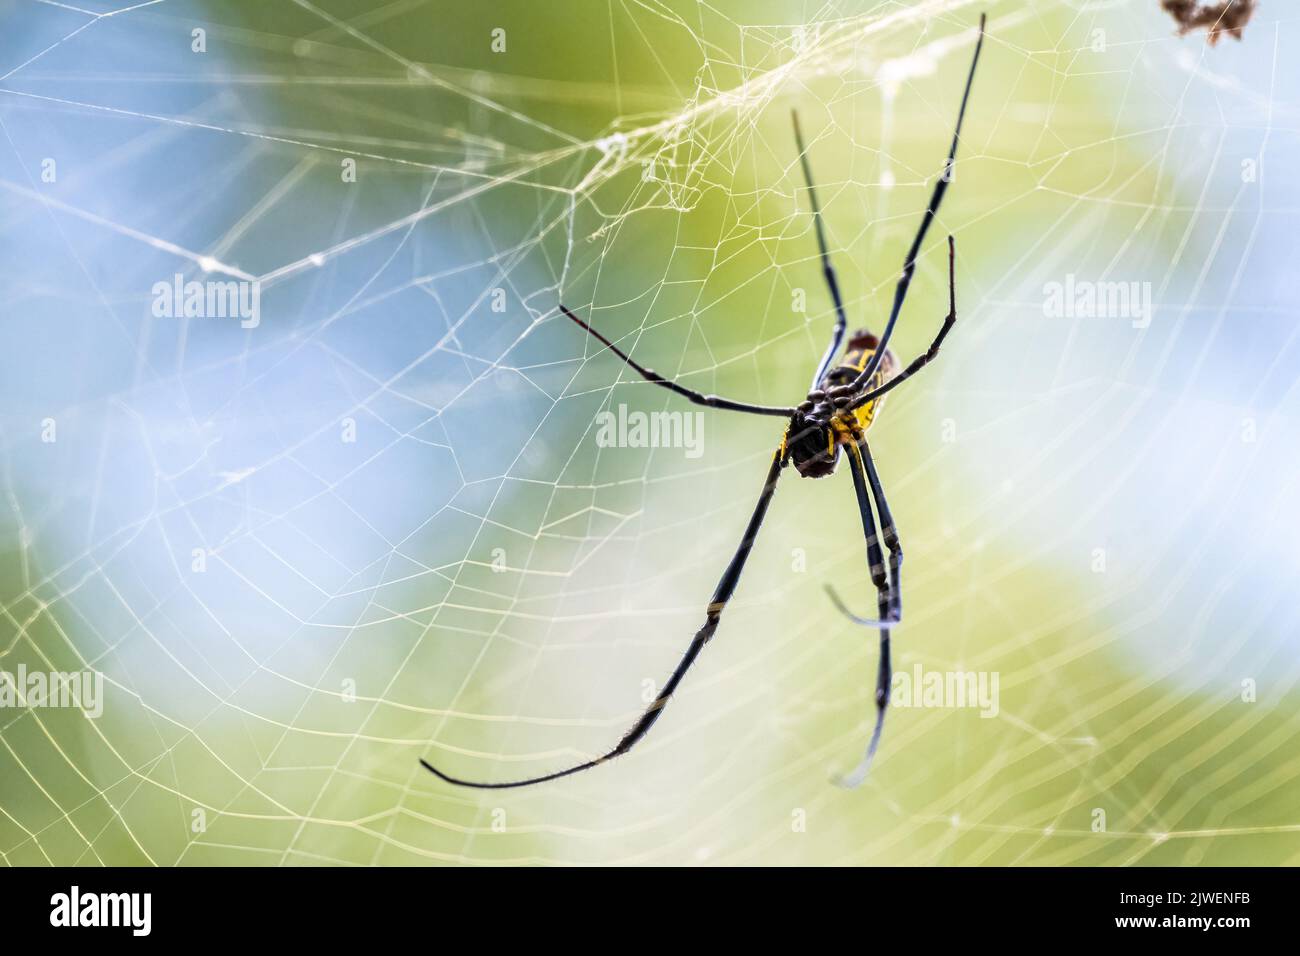 Die Joro-Spinne (Trichonephila clavata), eine invasive Art aus Asien, die heute in Georgia und South Carolina in den Vereinigten Staaten gefunden wird, ist in ihrem großen Netz zu finden. Stockfoto